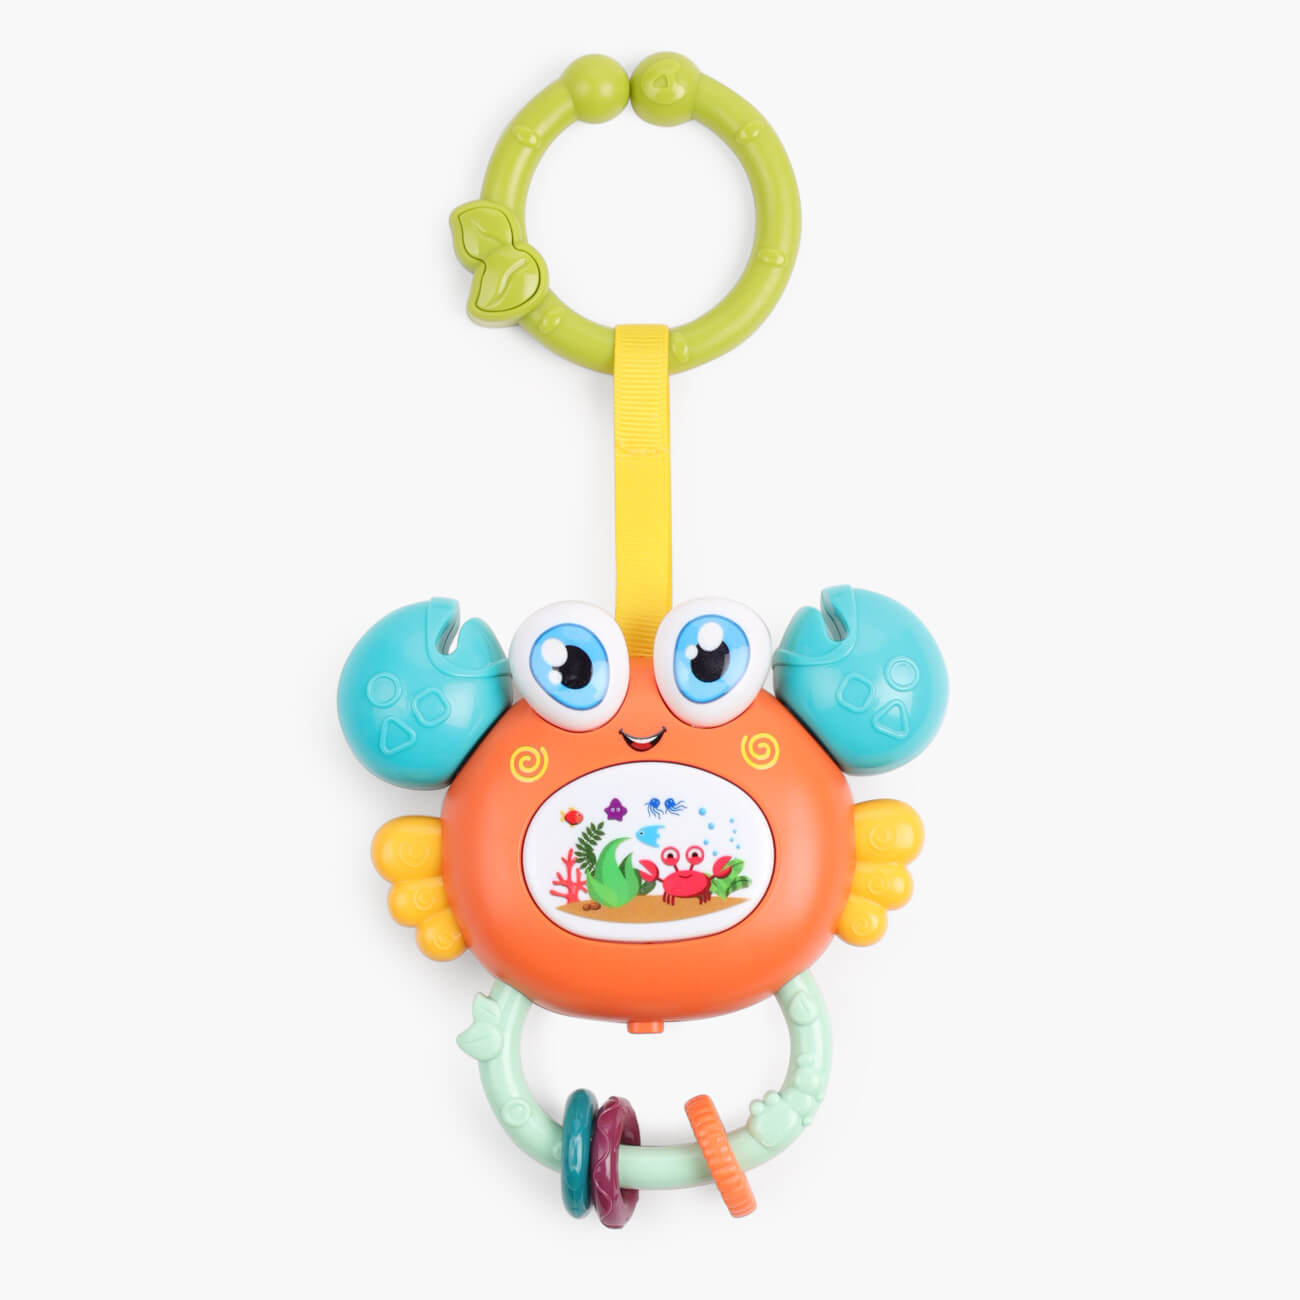 Игрушка развивающая, 11х12 см, музыкальная, пластик, оранжевый, Крабик, Aquatic animals развивающая игрушка грелка мишка крошка с вишнёвыми косточками